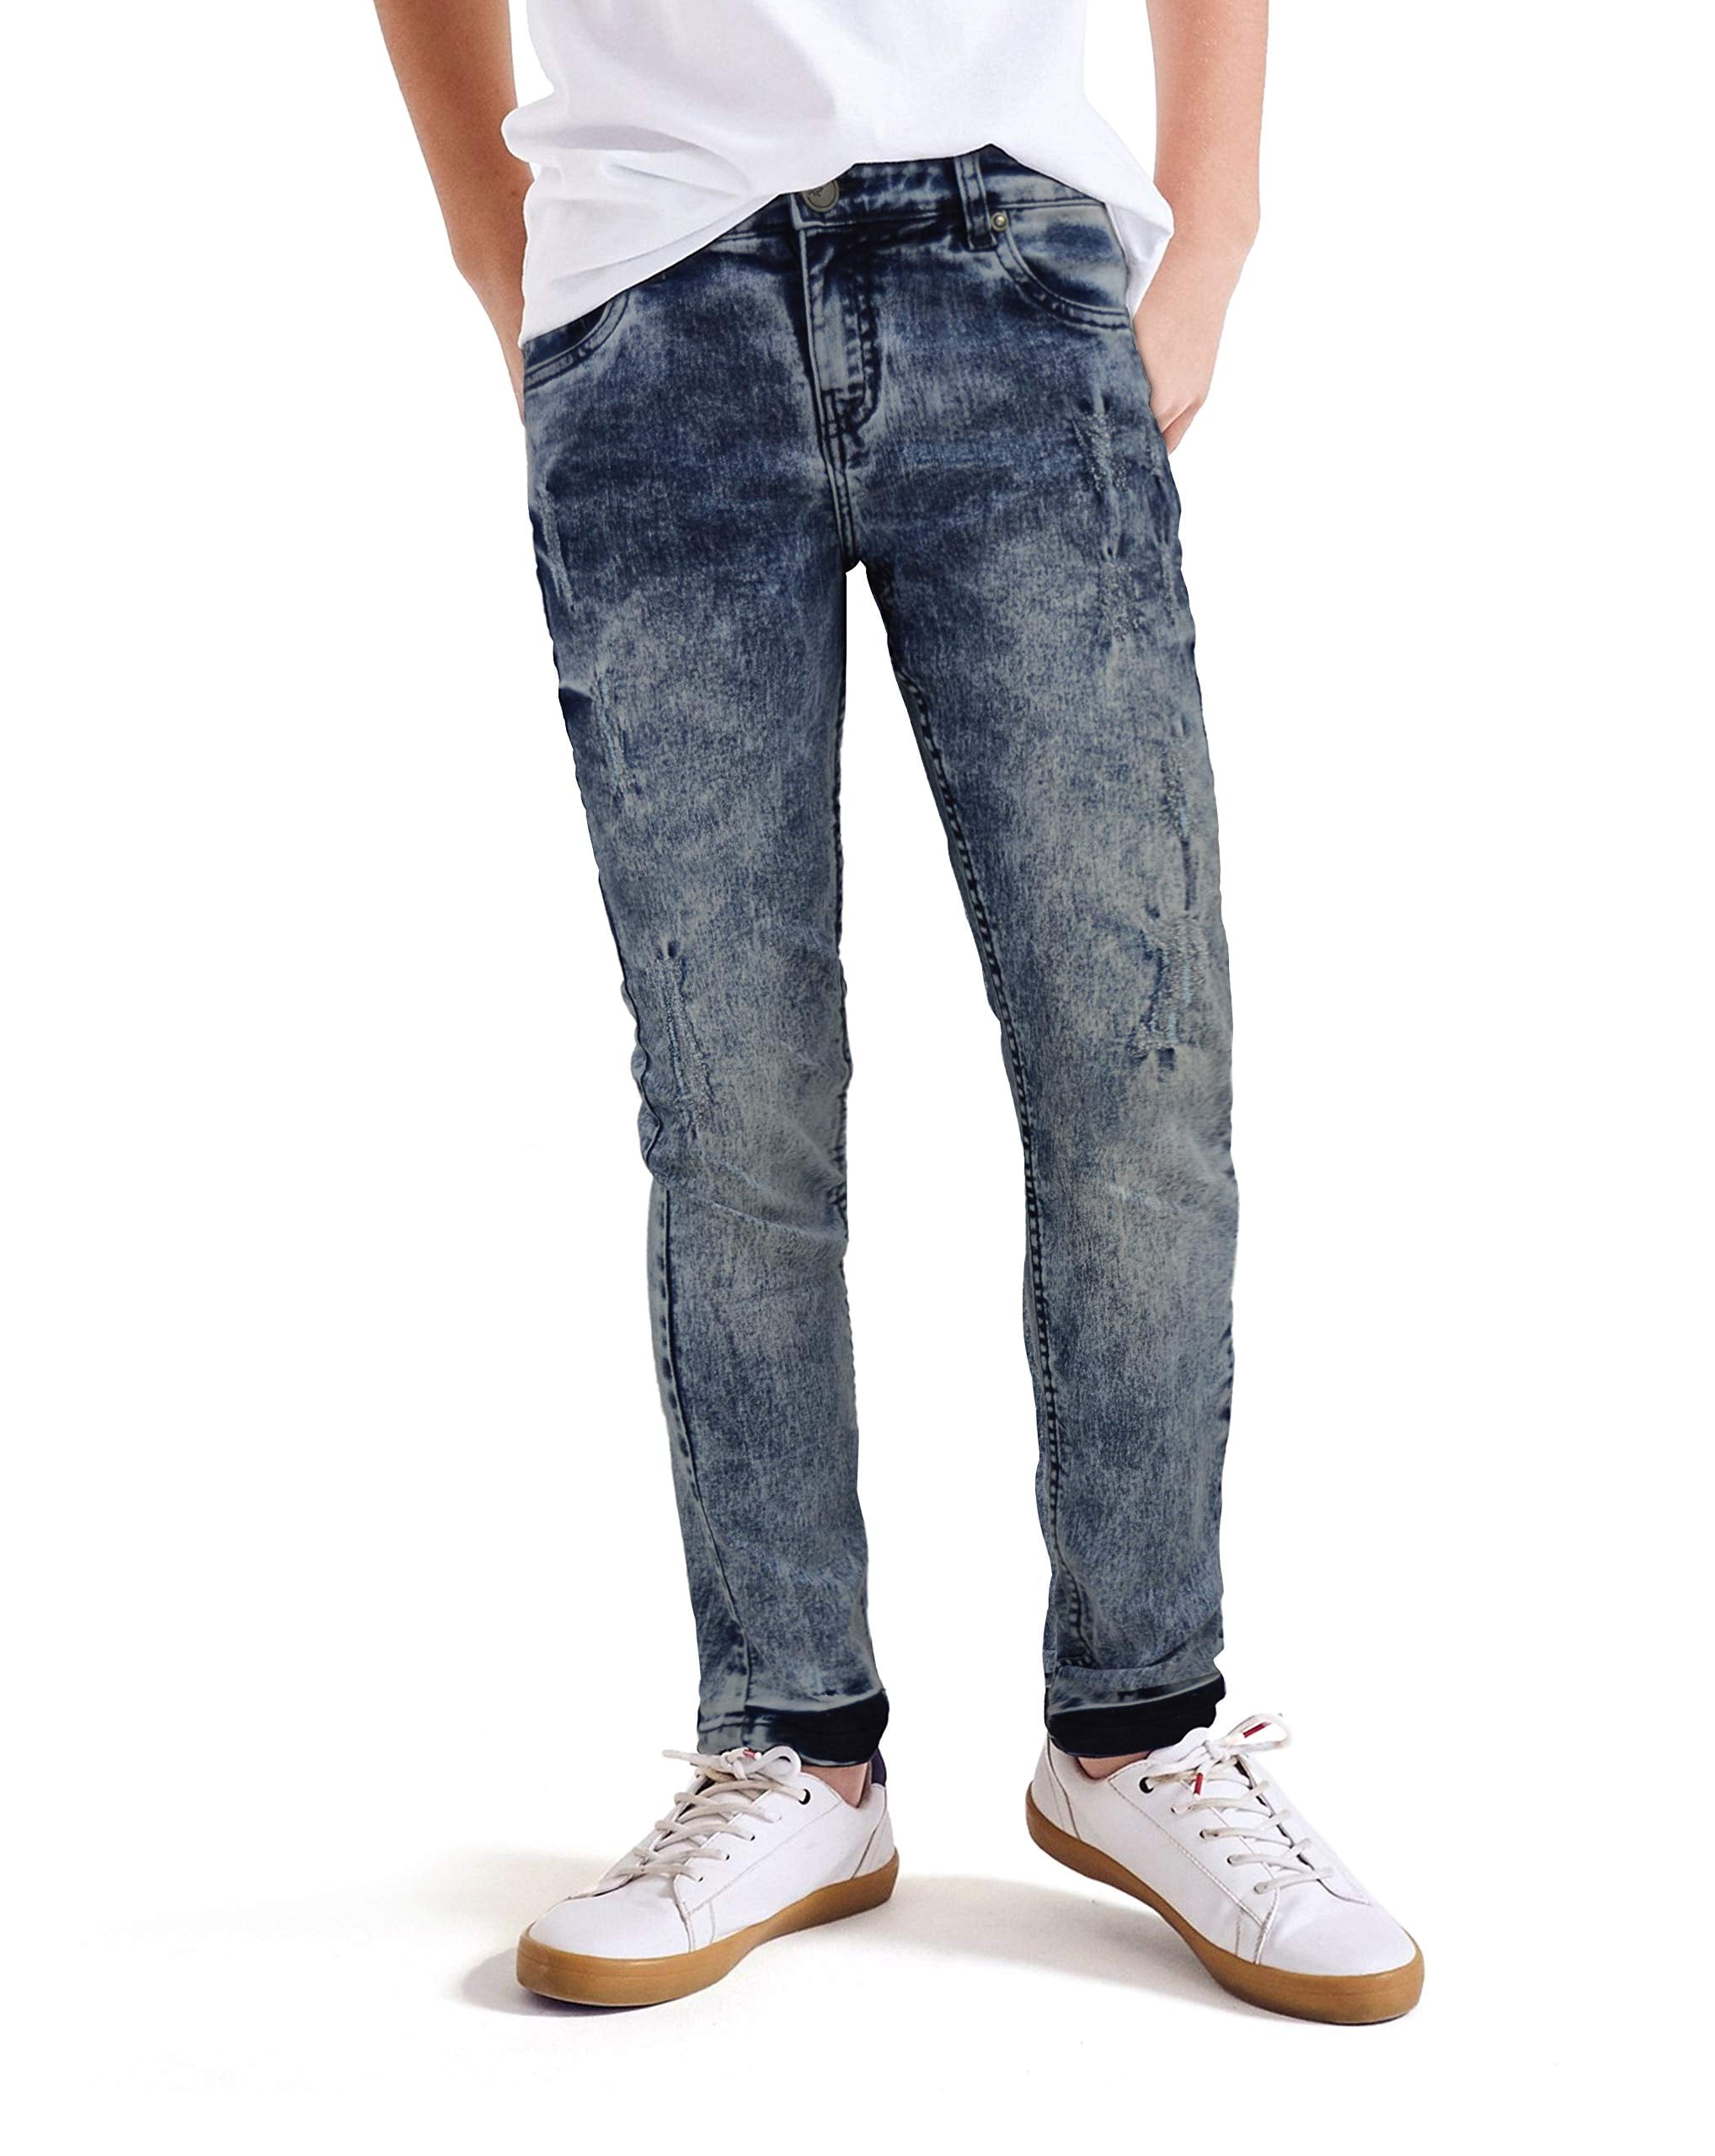 schilder binnenkort Nu al X RAY Skinny Ripped Jeans for Boys – Distressed Slim Fit Denim Pants, Light  Wash - Minor Rips, Size 14 - Walmart.com